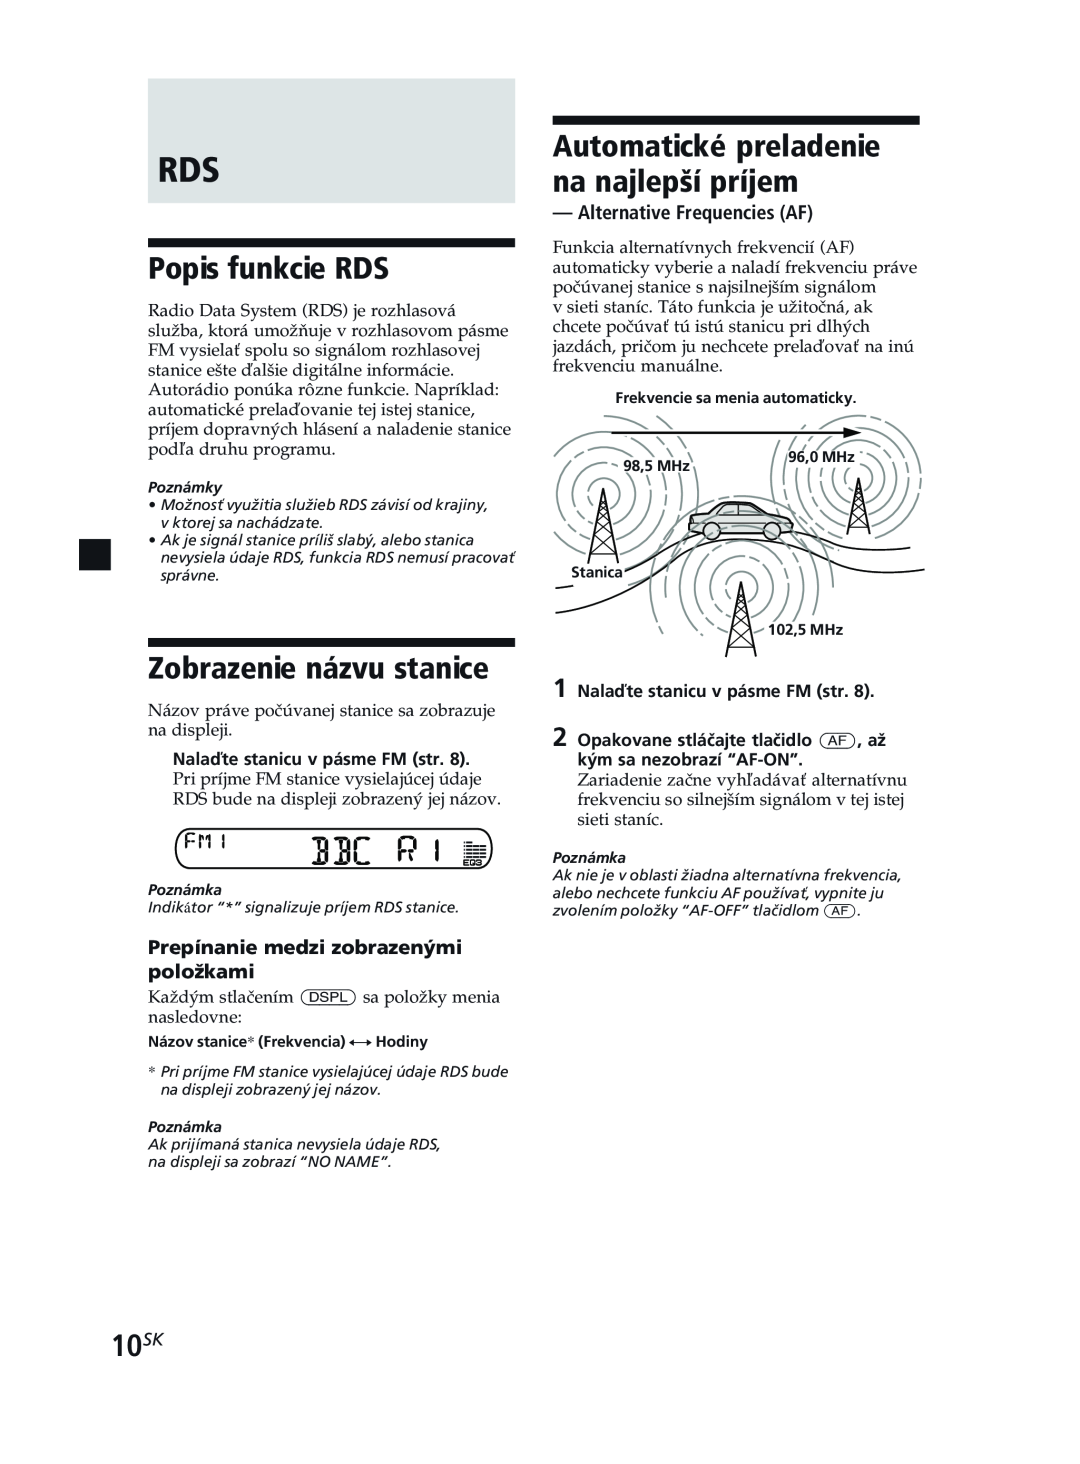 Sony XR-CA370X manual Popis funkcie RDS, Zobrazenie názvu stanice, 10SK, Automatické preladenie na najlepší príjem 